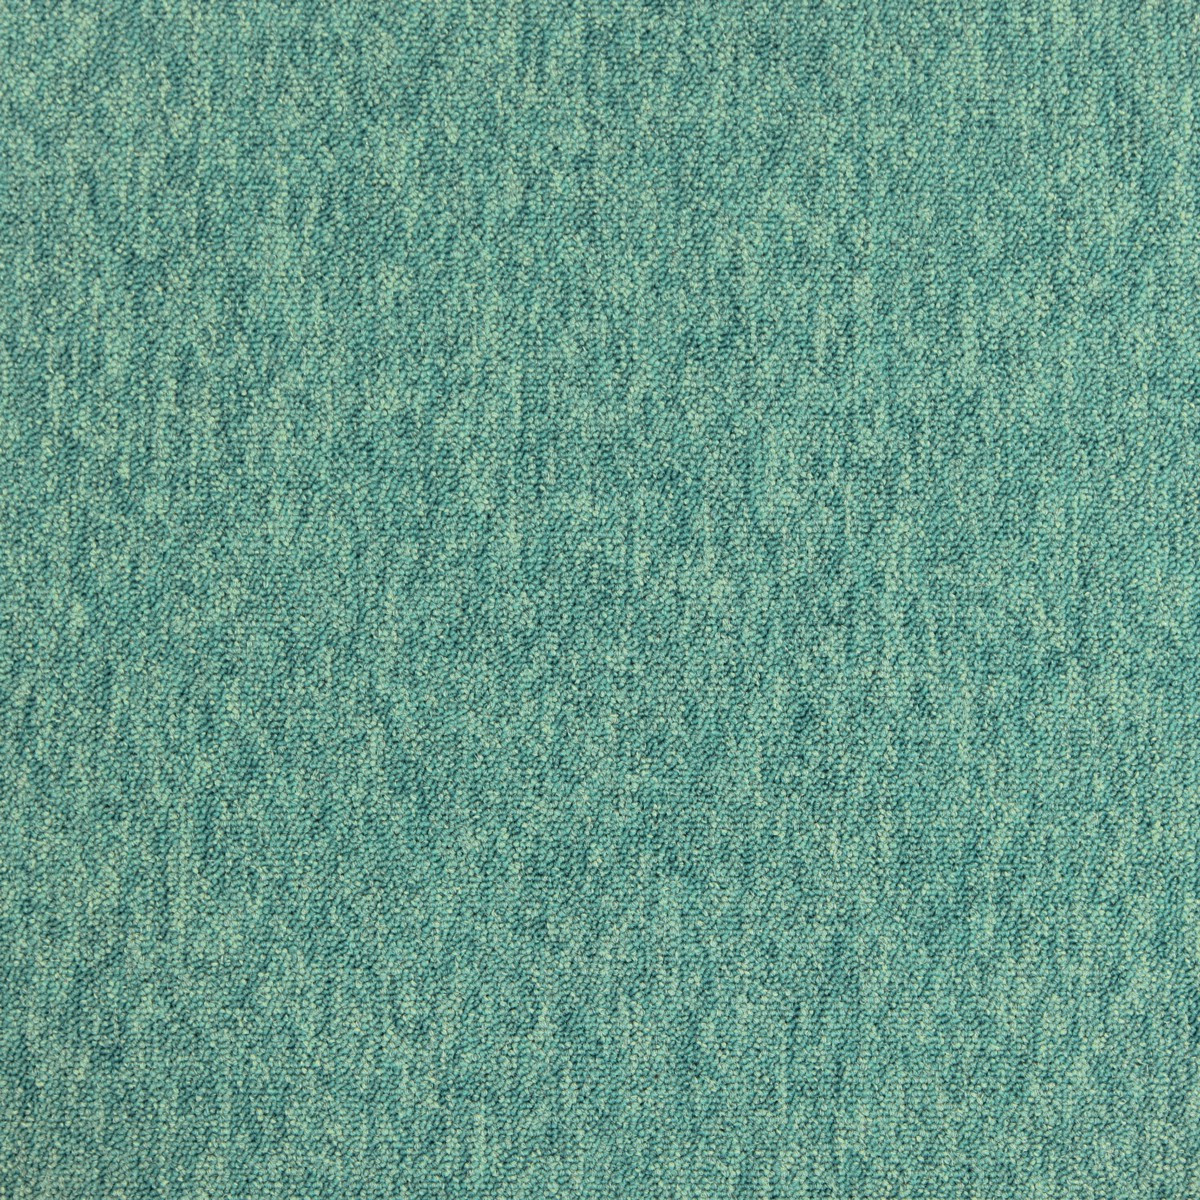 Metrážový koberec Cobalt 51876 tm.zelený, zátěžový